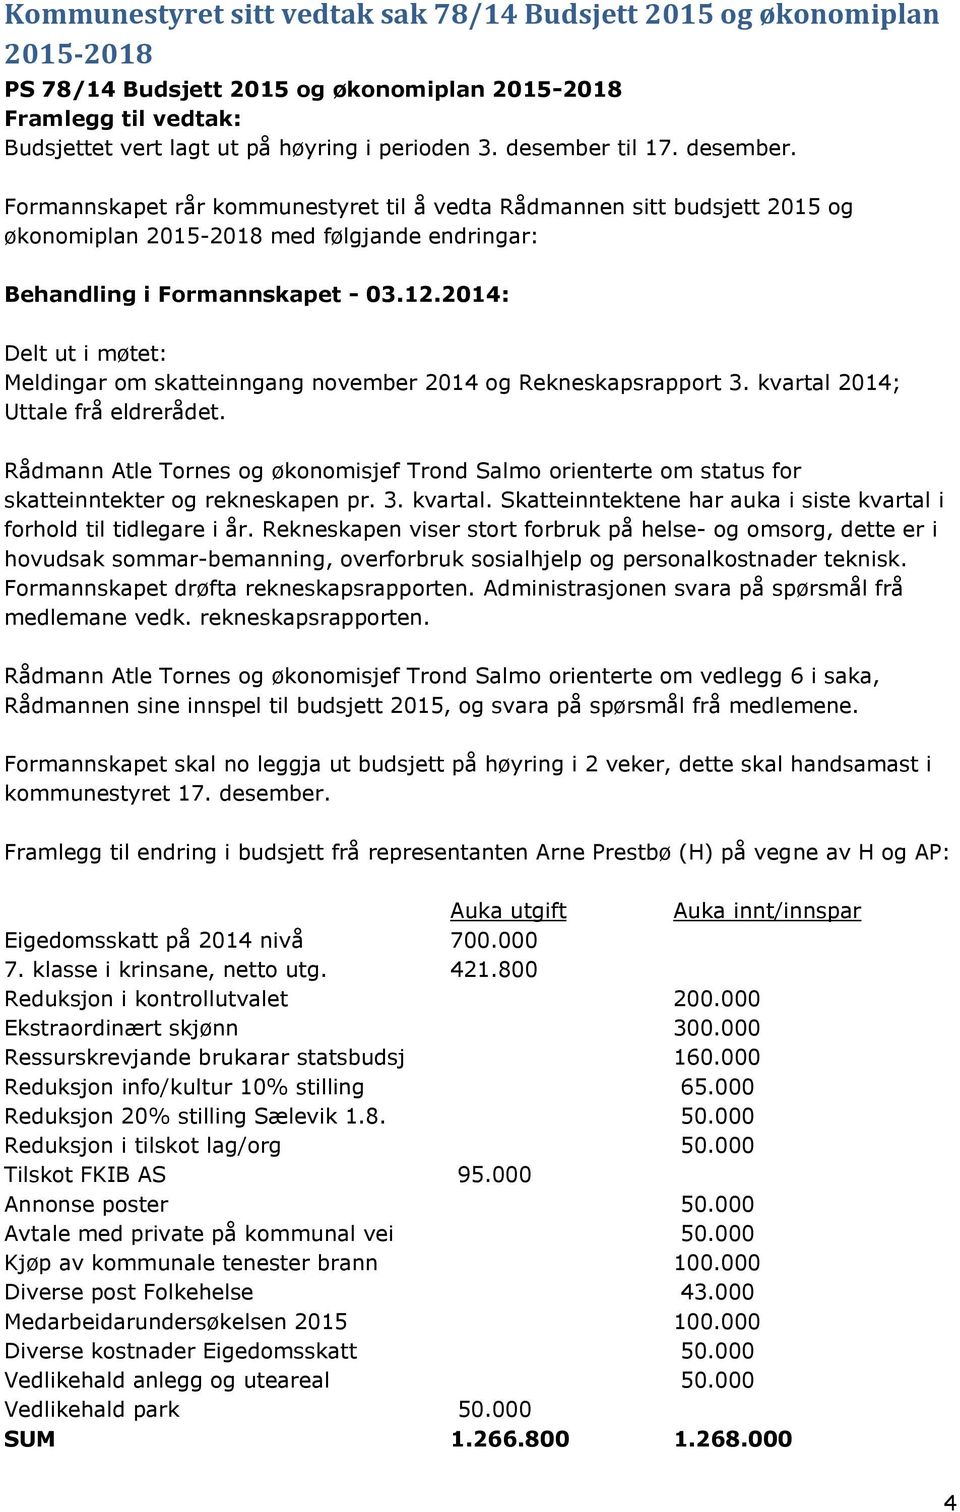 2014: Delt ut i møtet: Meldingar om skatteinngang november 2014 og Rekneskapsrapport 3. kvartal 2014; Uttale frå eldrerådet.